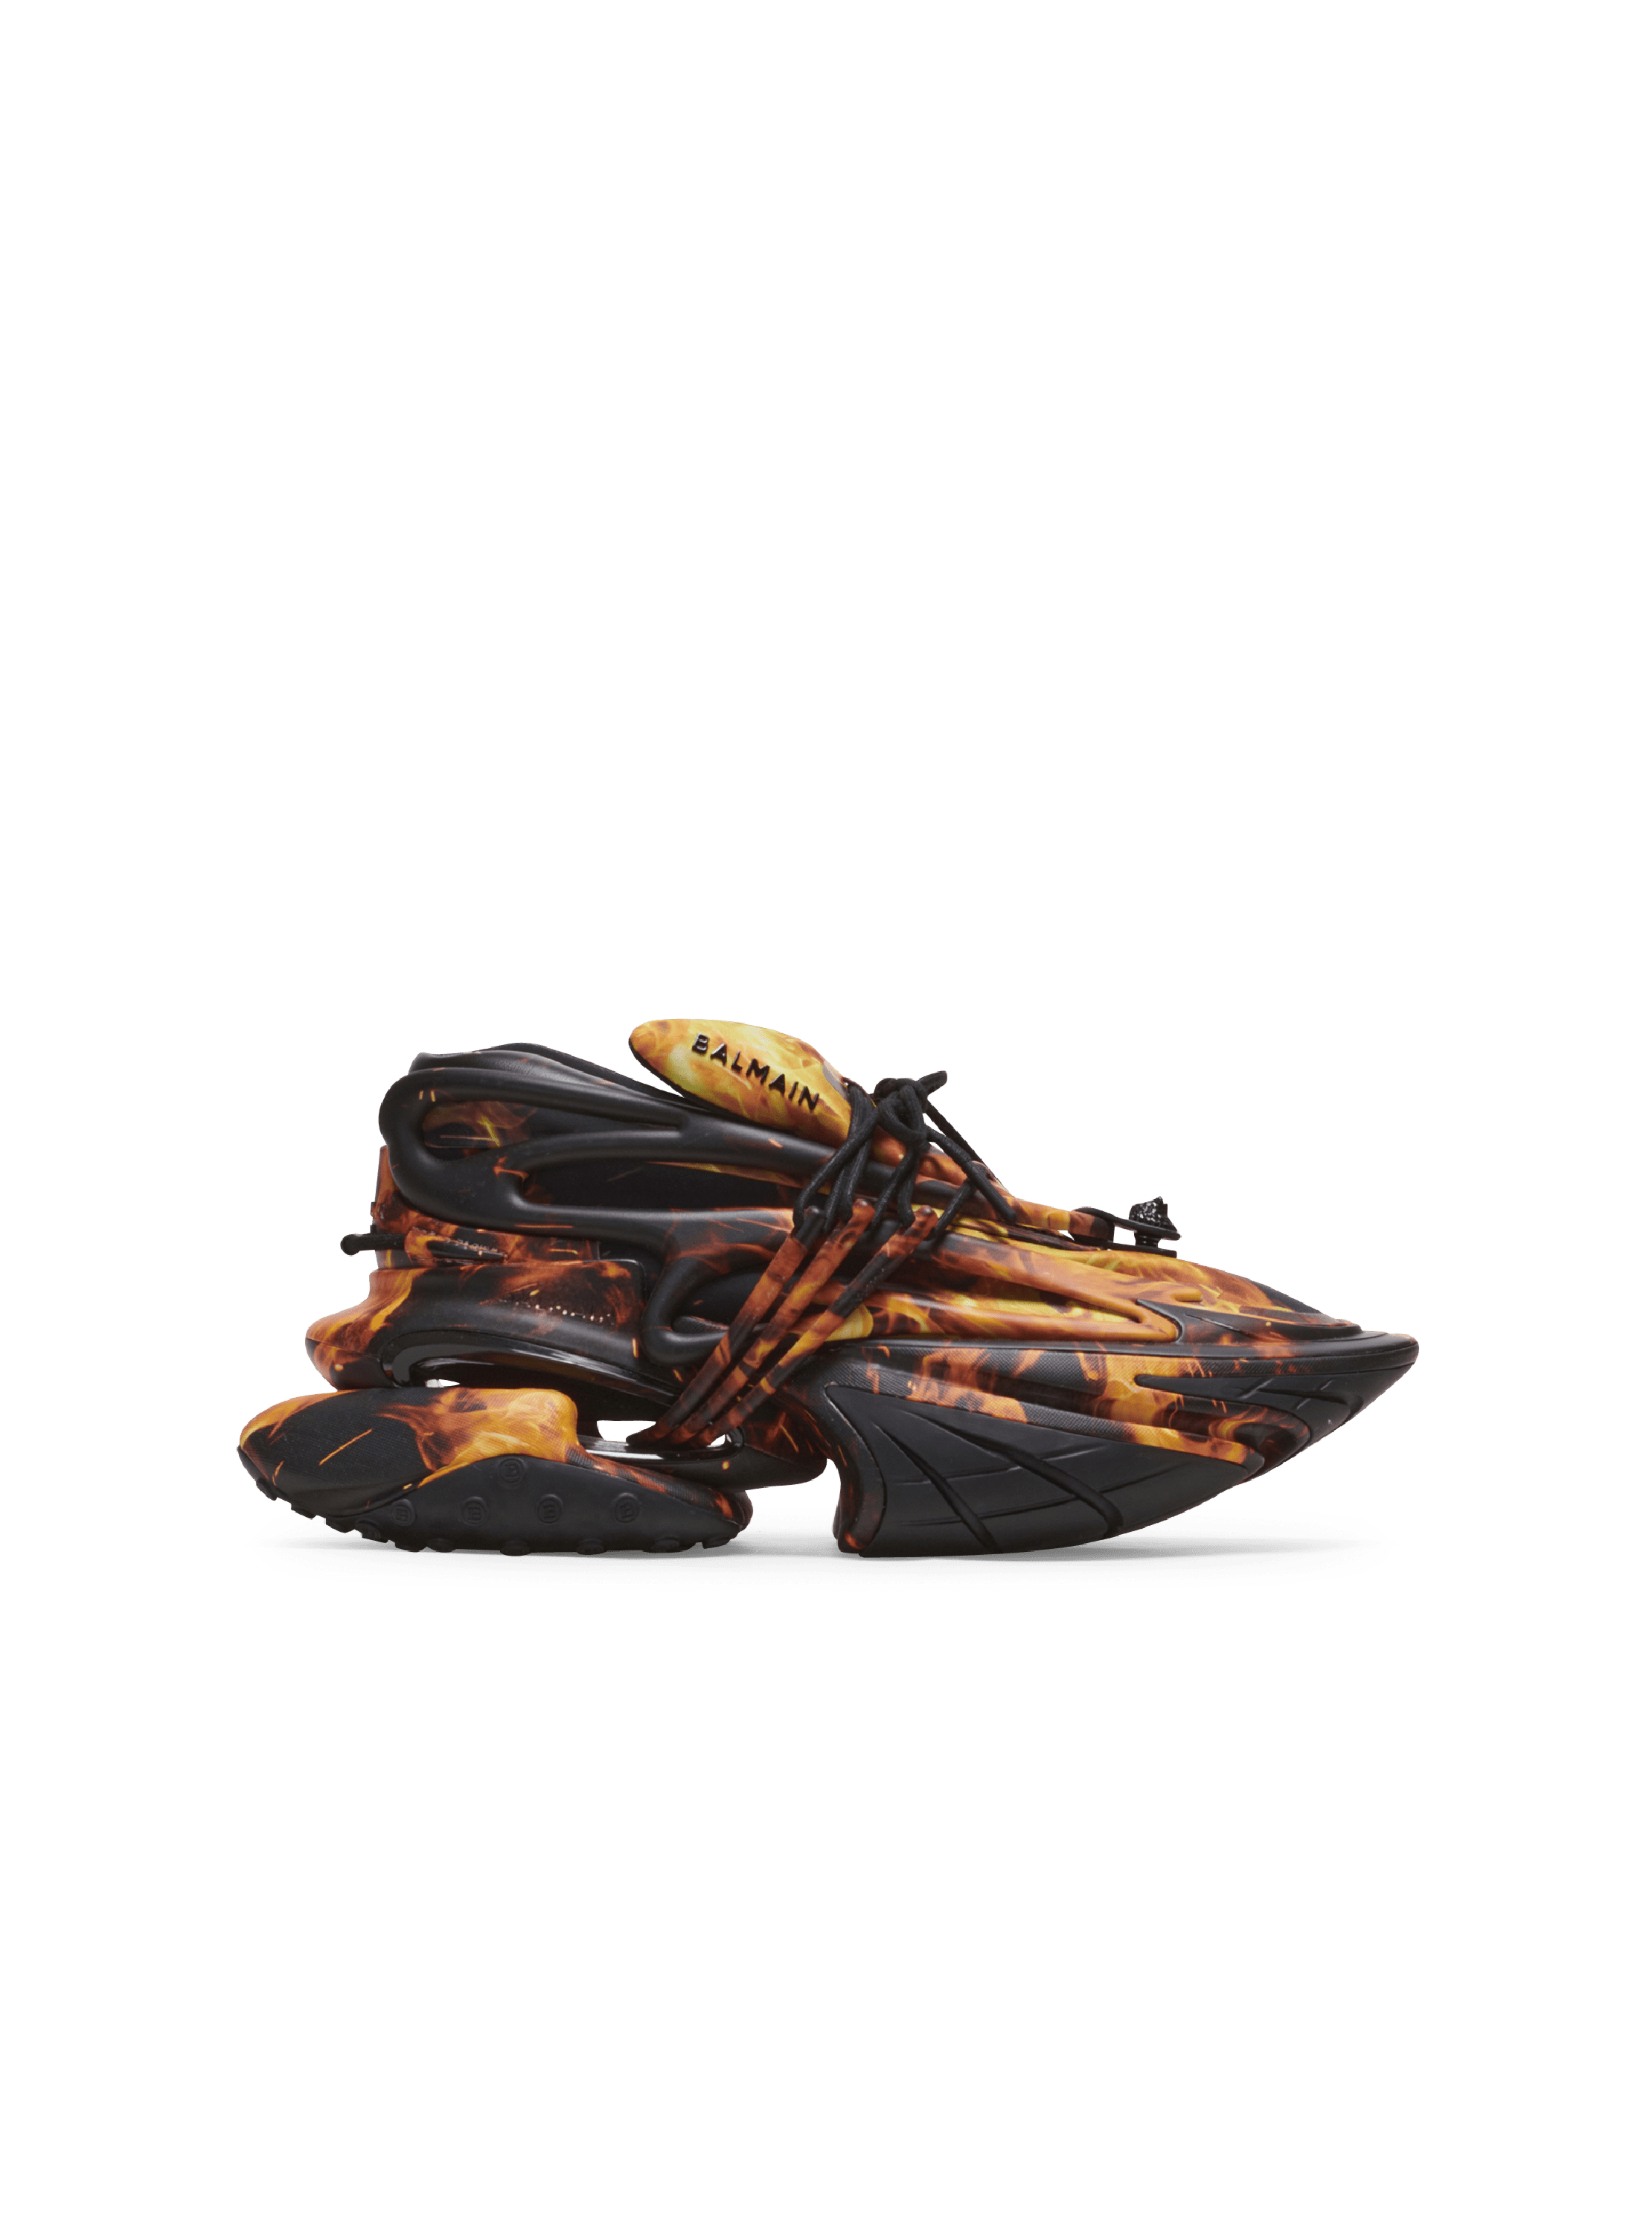 Sneakers Unicorn aus Neopren mit Fire-Print und Leder, orange, hi-res